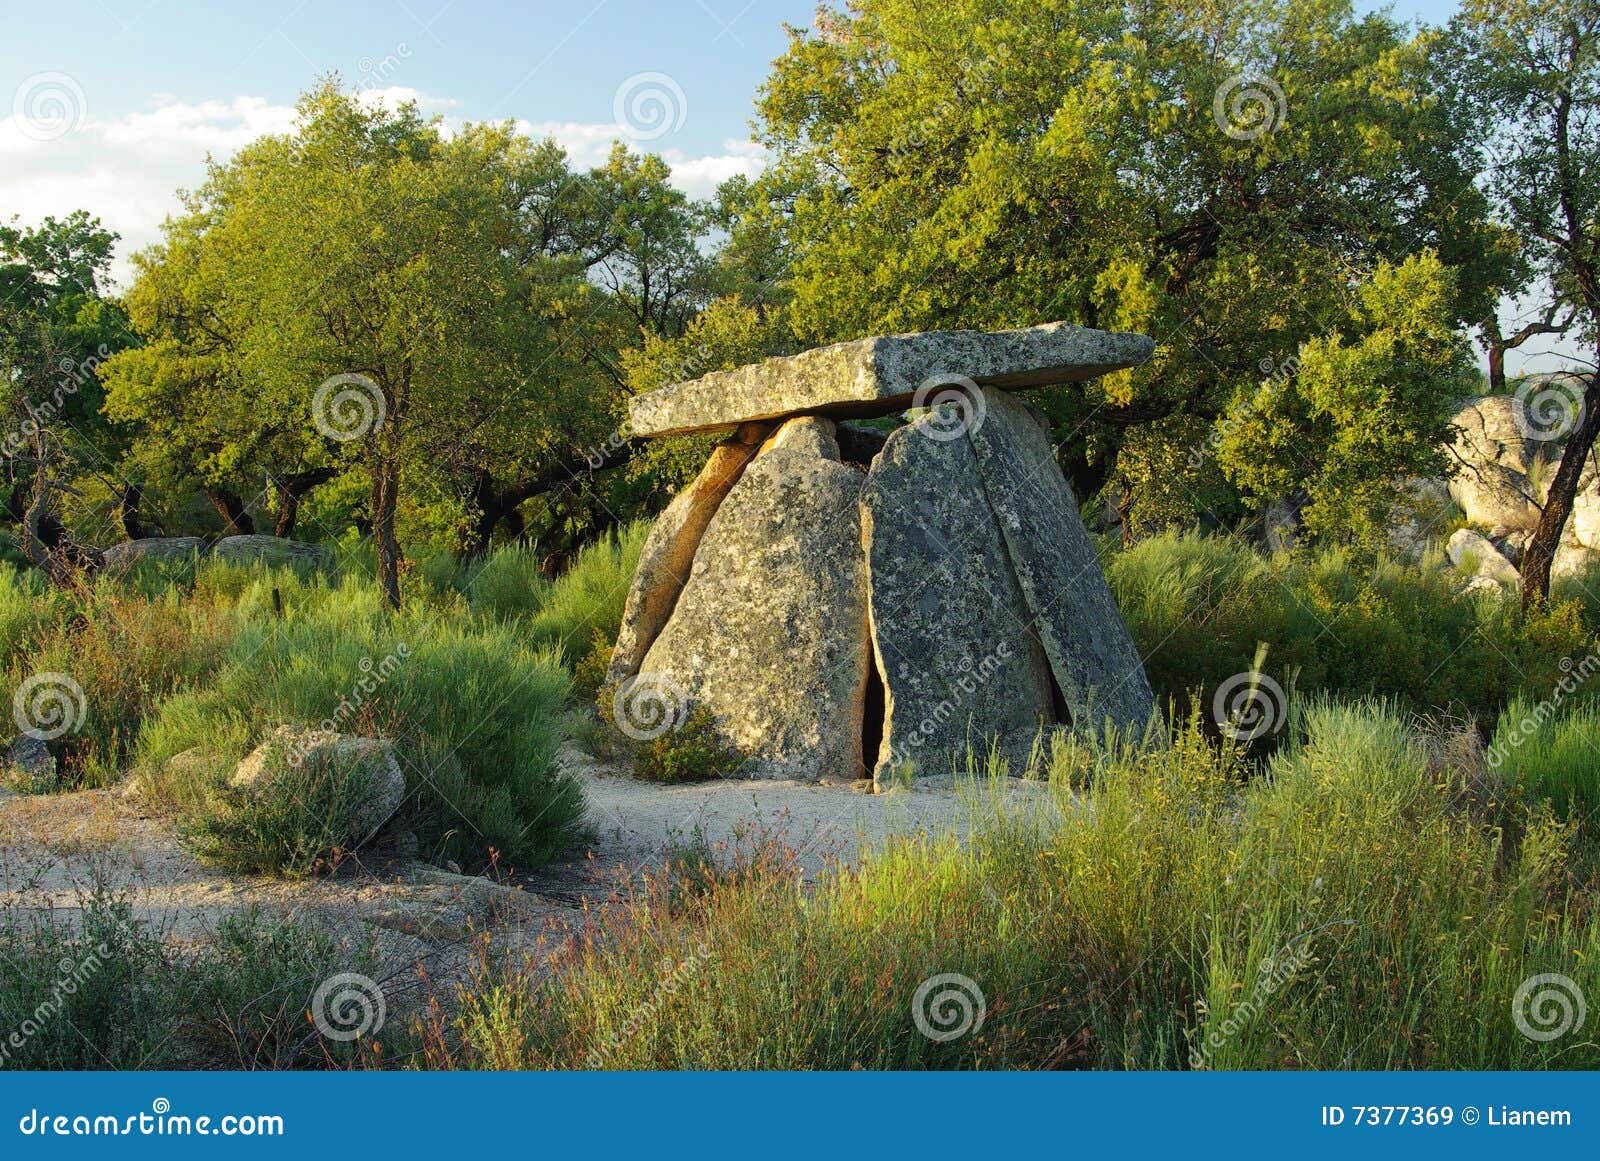 valencia de alcantara dolmen tapias